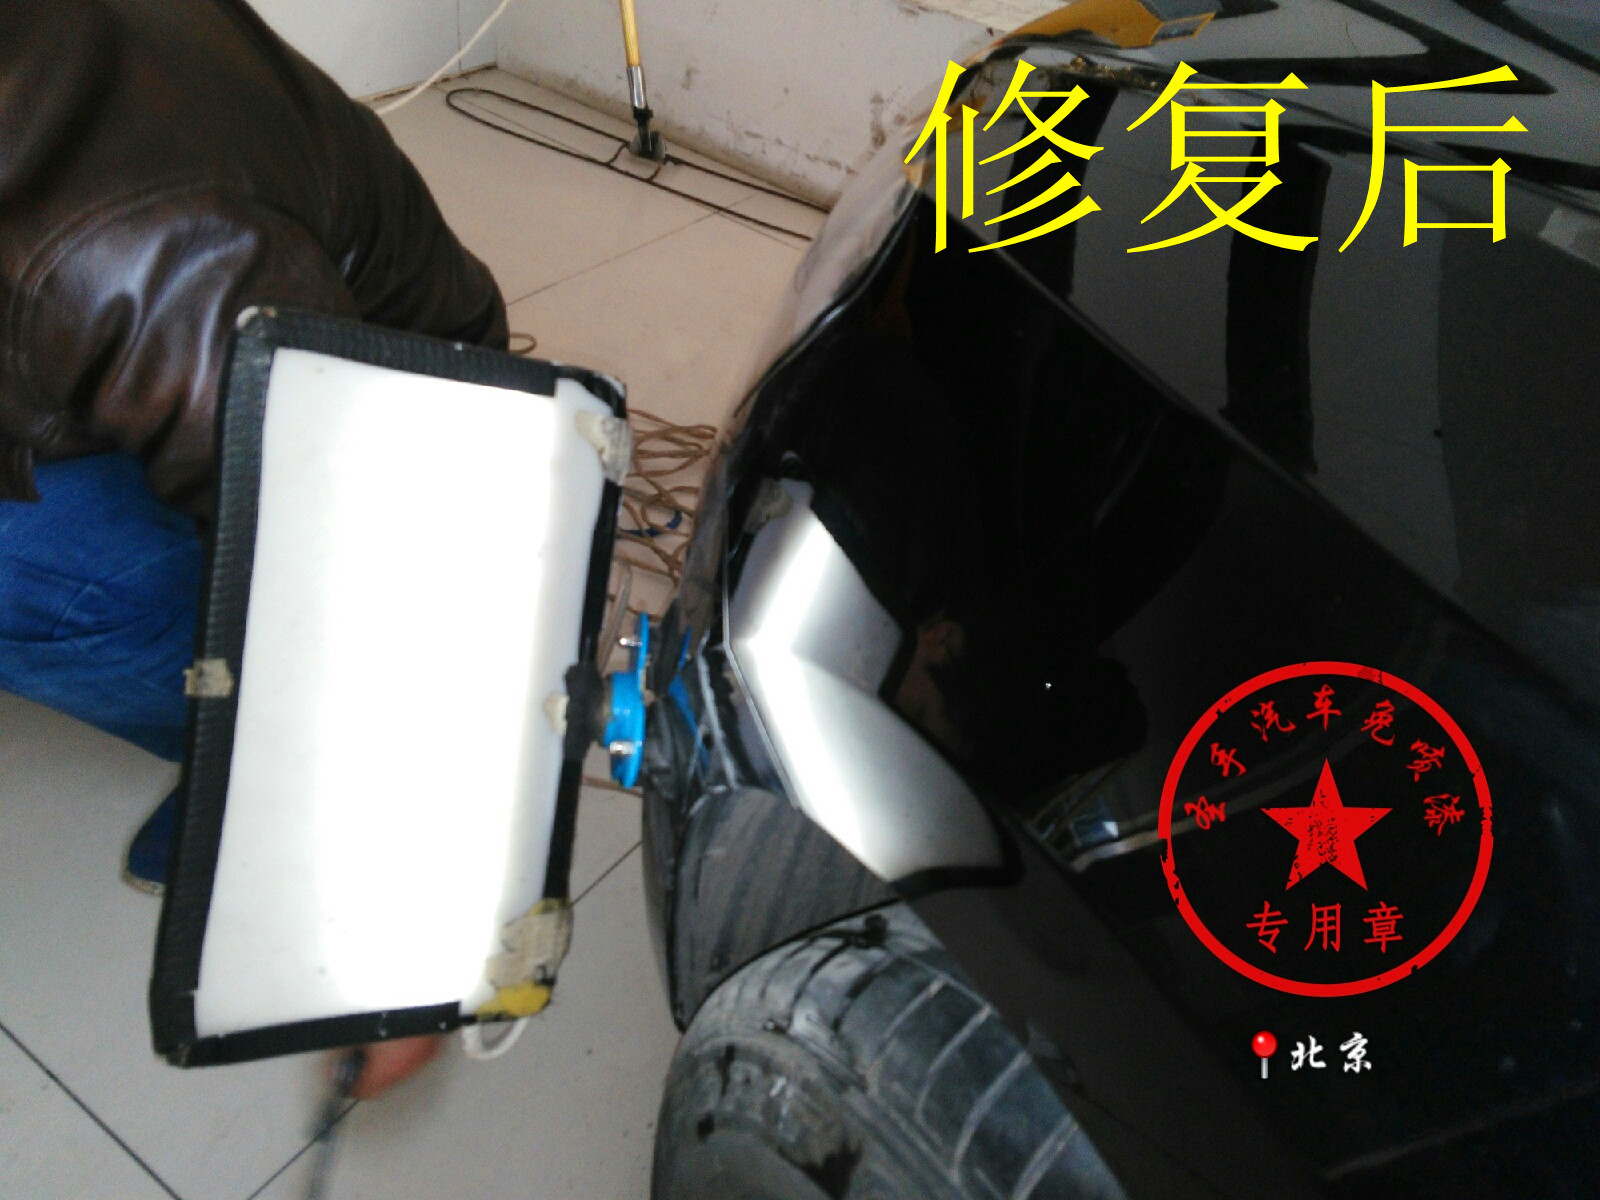 修复案例-凹陷修复案例-后翼子板修复效果-北京圣手汽车装饰服务有限公司